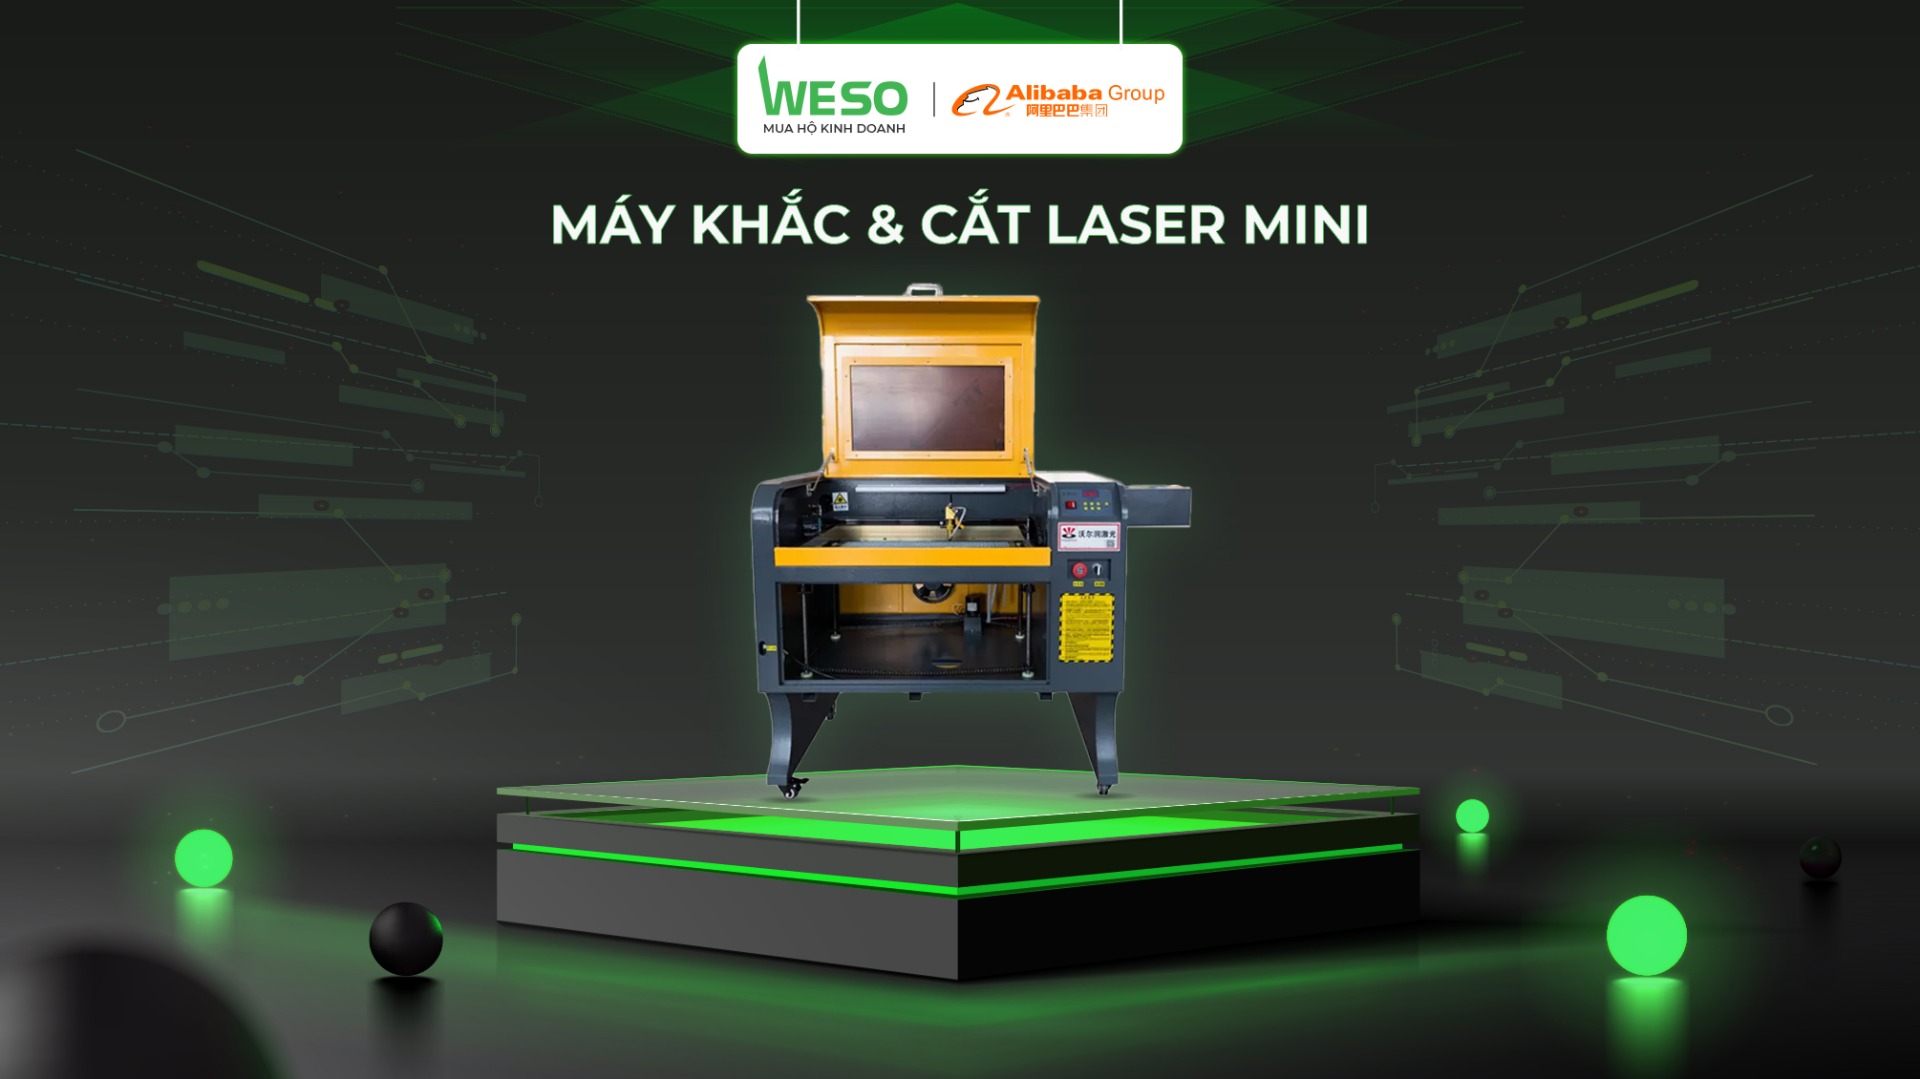 Máy khắc & cắt laser mini